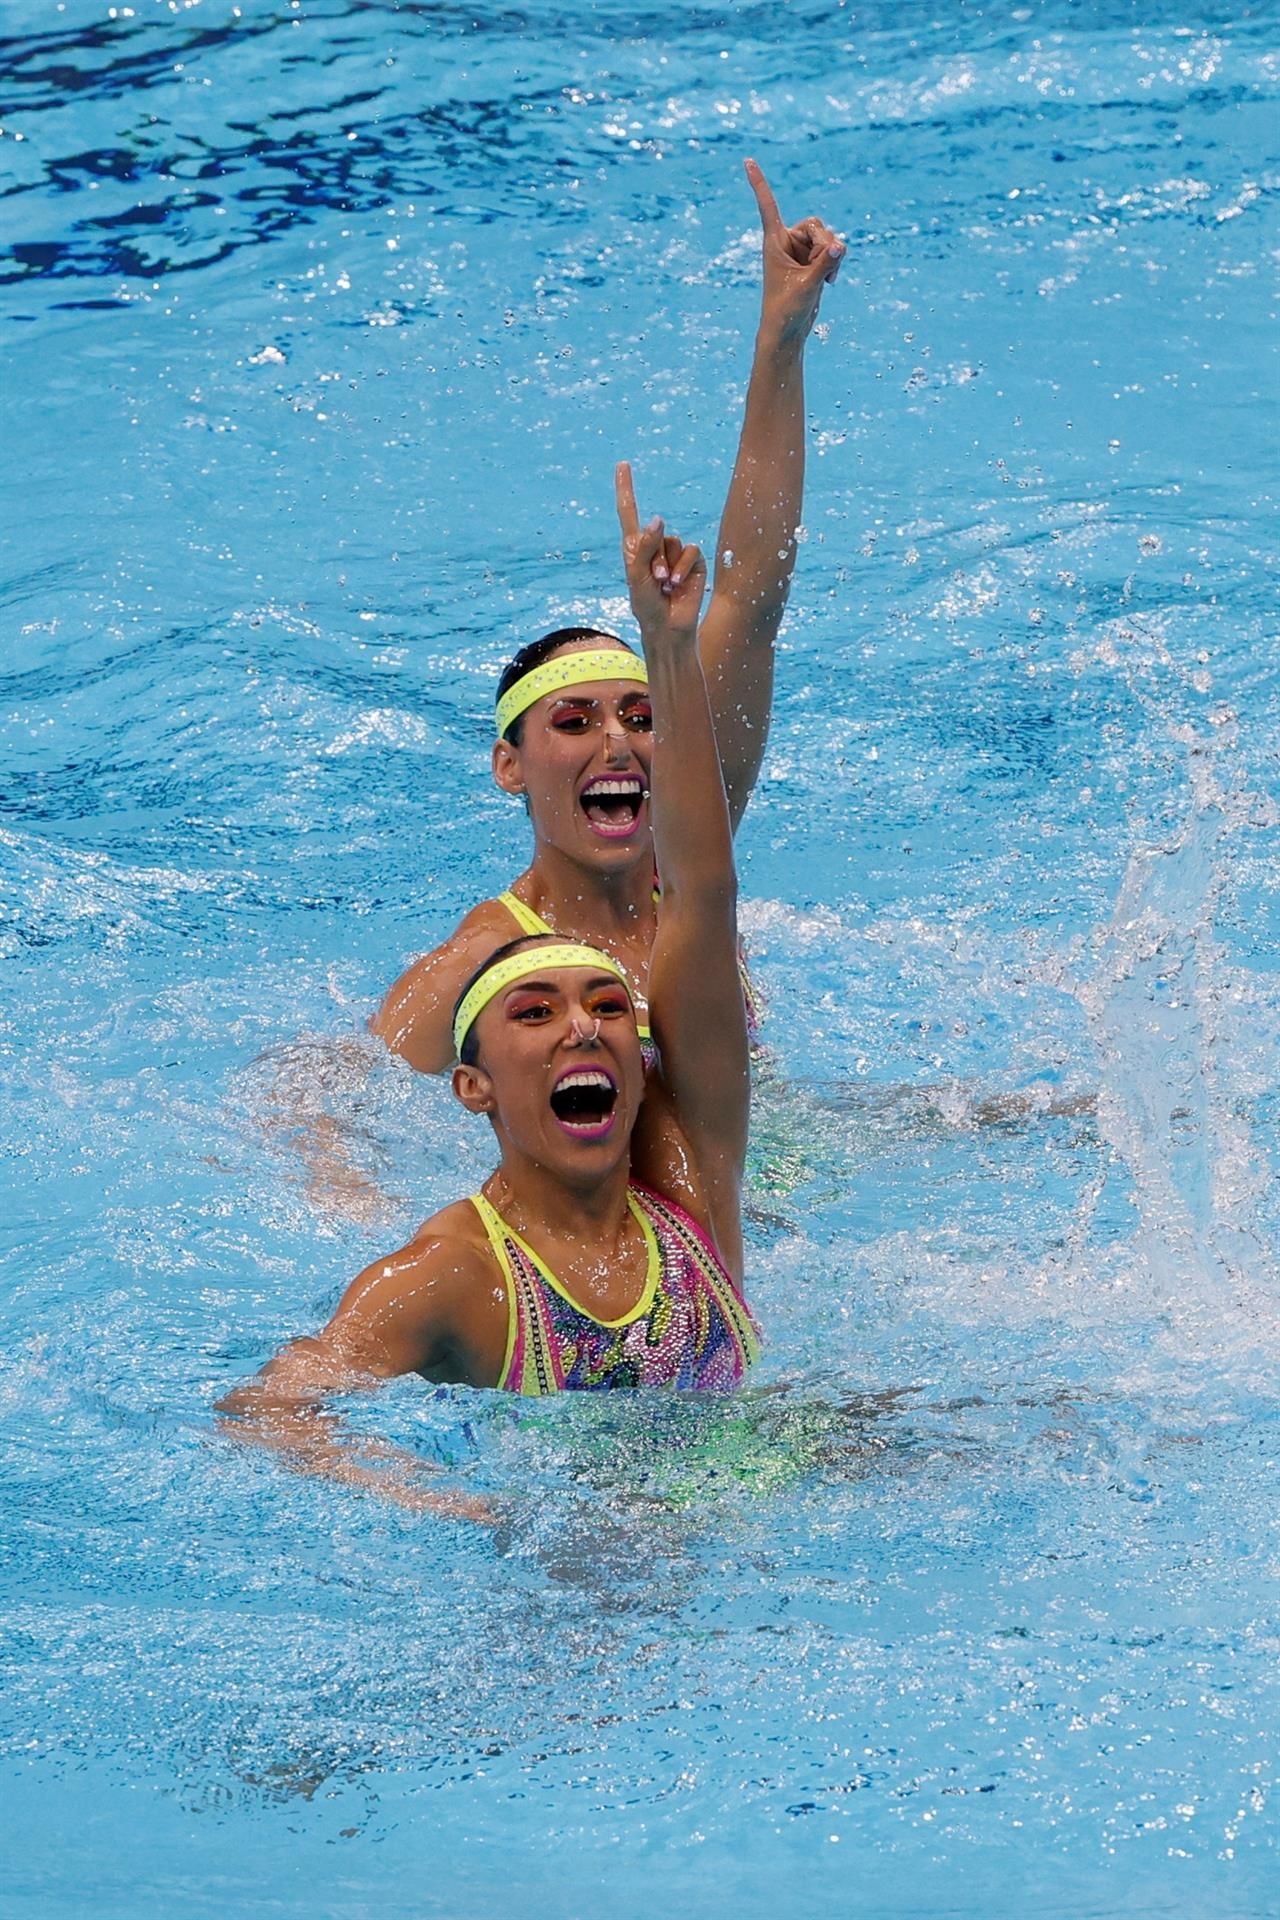 Las mexicanas Nuria y Joana en semifinal de Tokio 2020